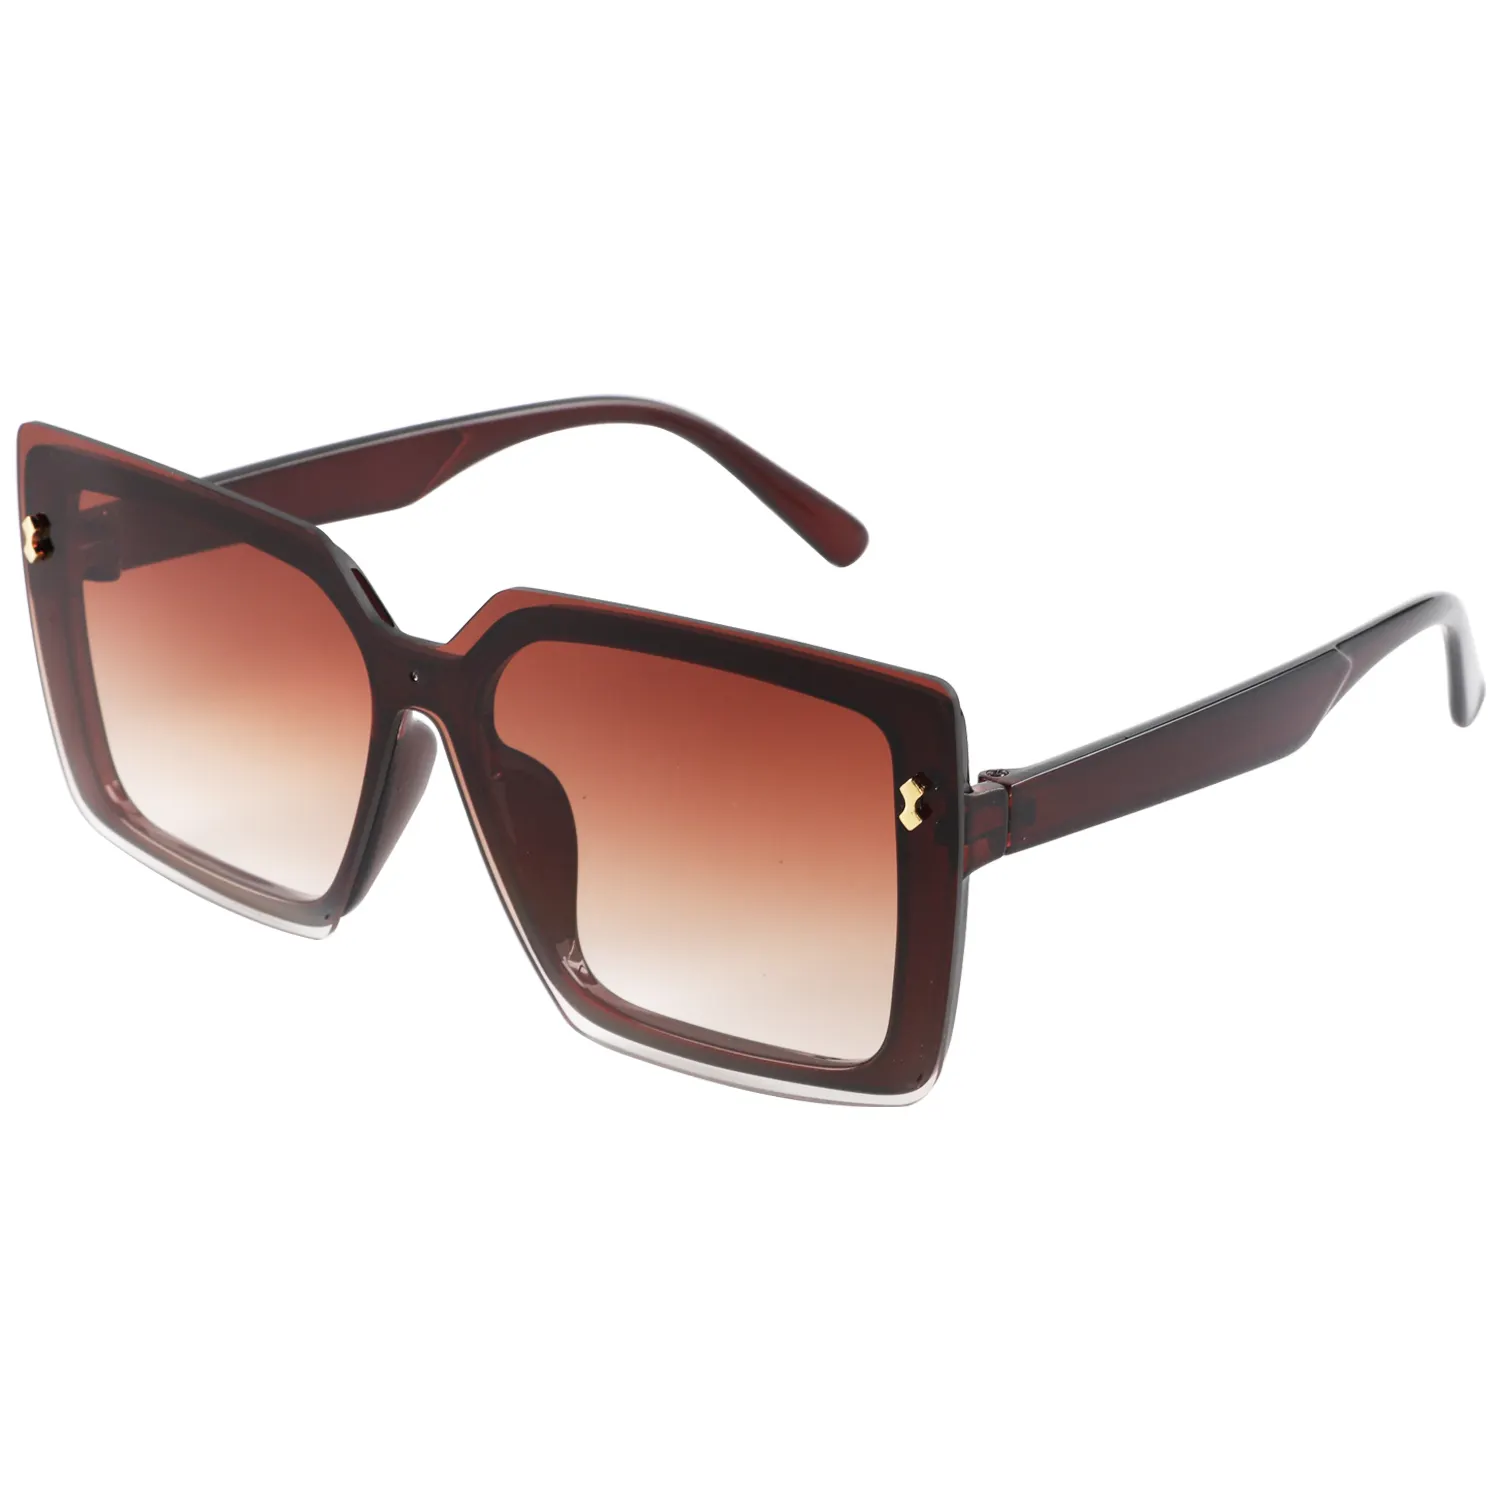 Net red ins estilo retro gafas de sol cuadradas mujer cara redonda gafas de sol adelgazantes personalidad calle foto UV gafas marea